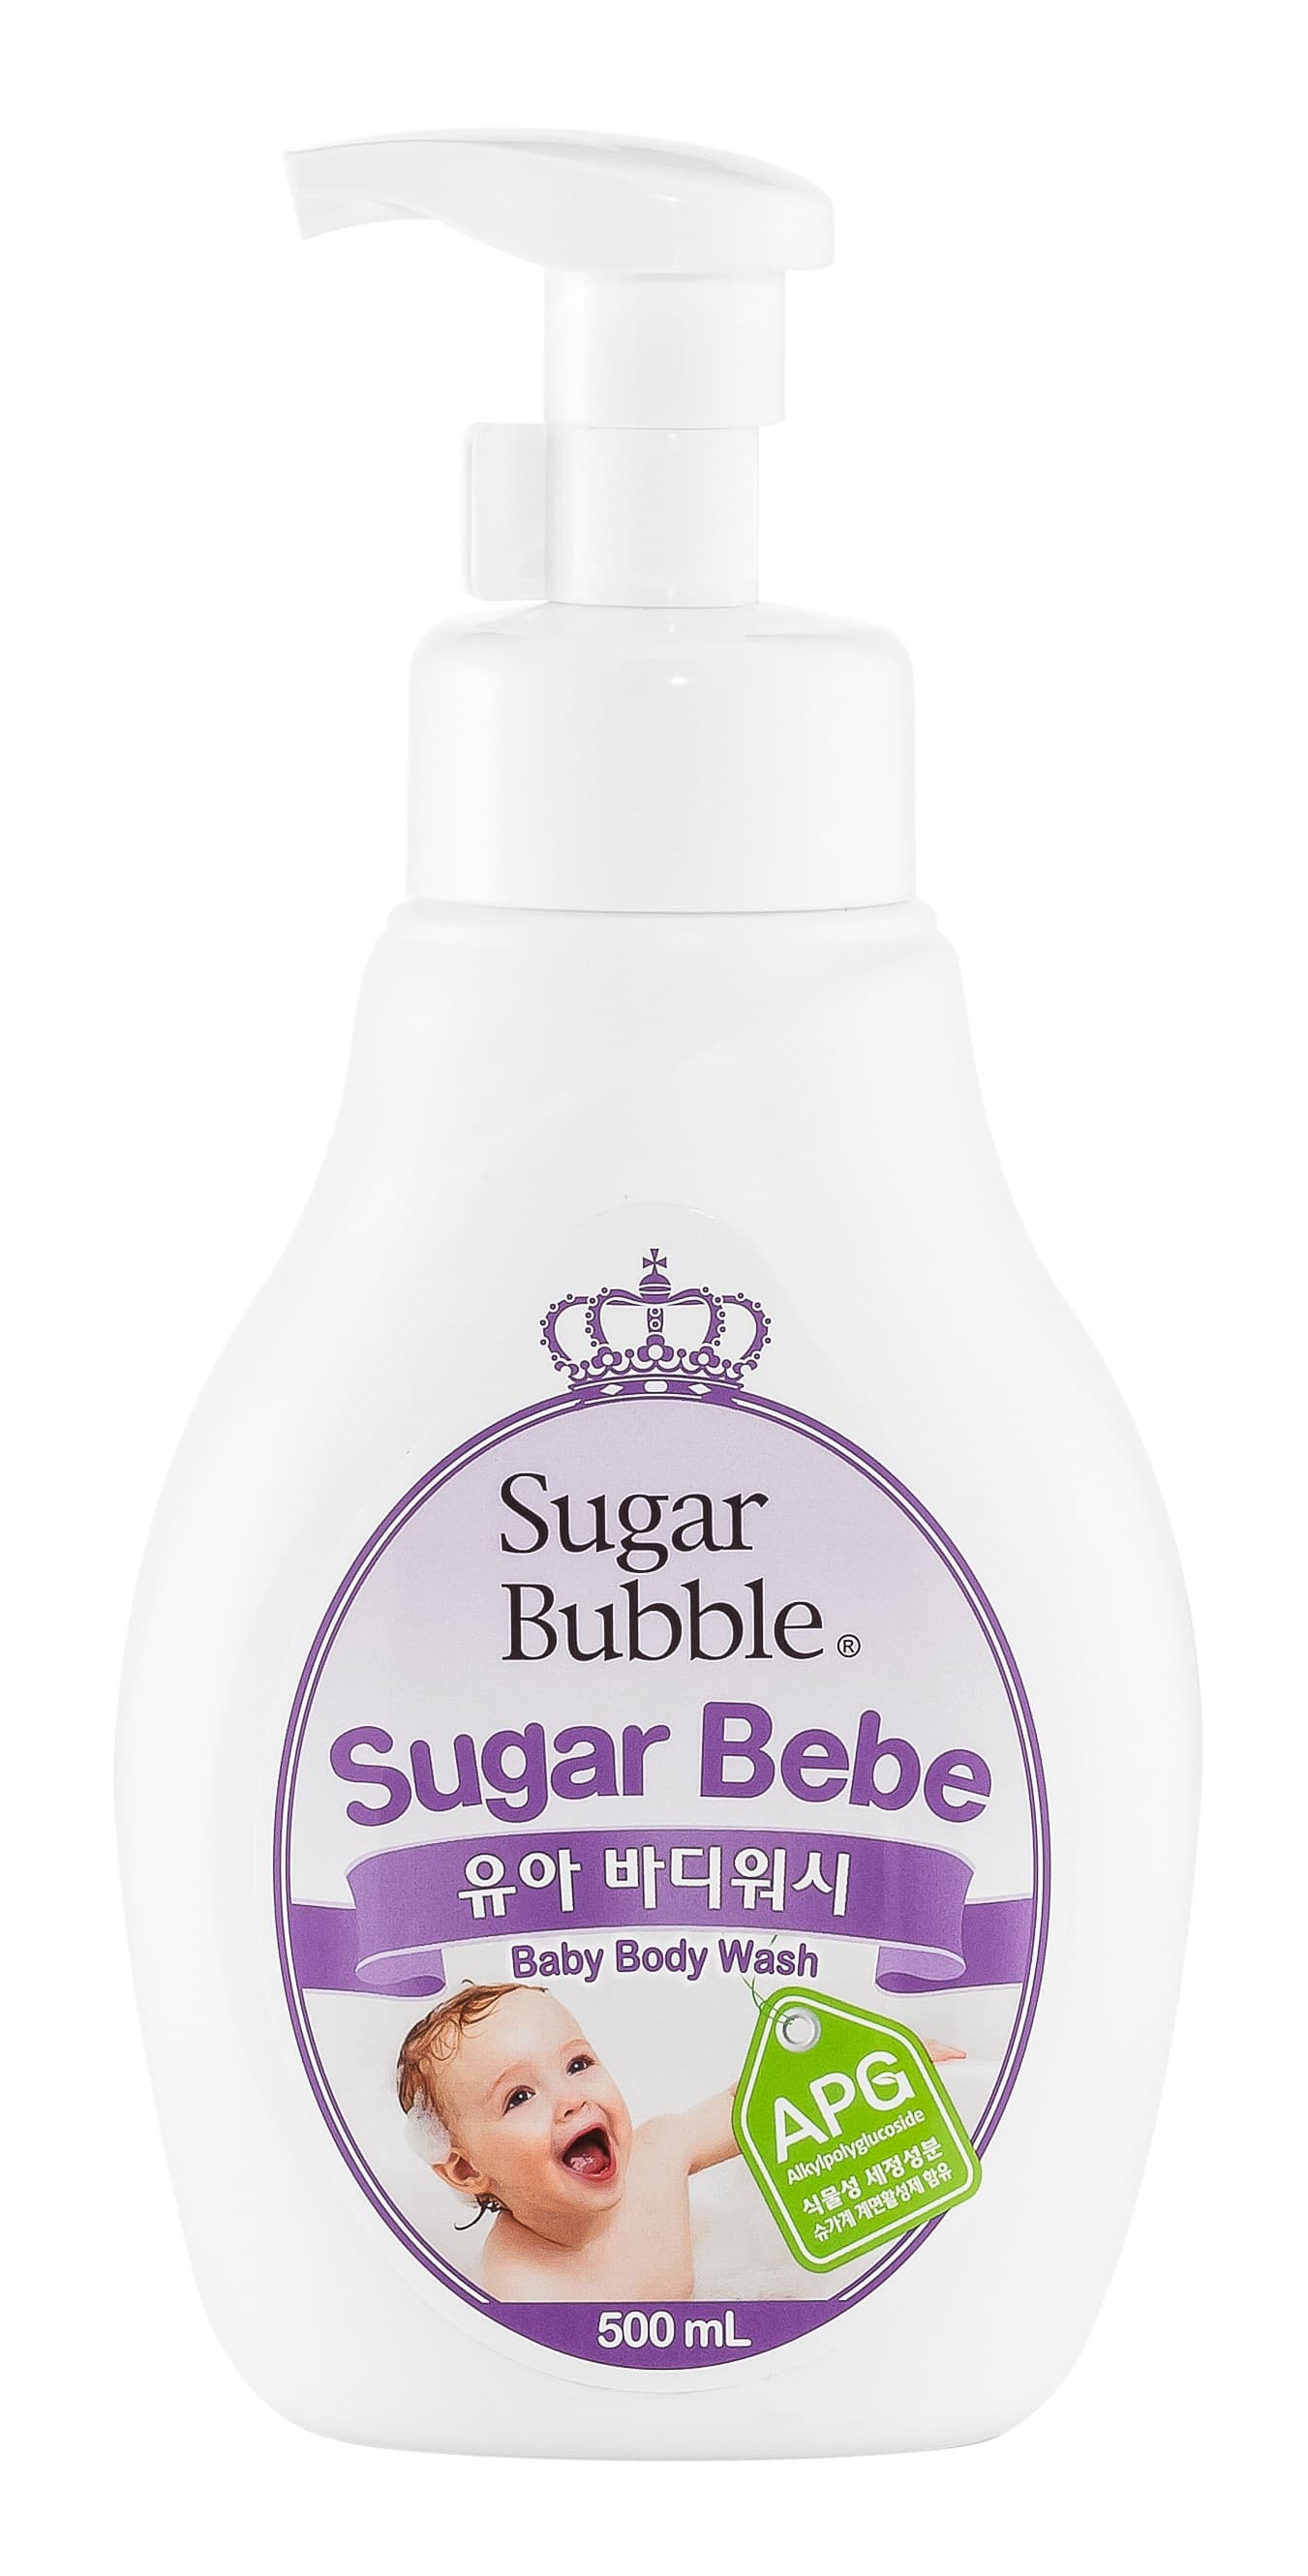 Sugar Bubble Baby Body Wash